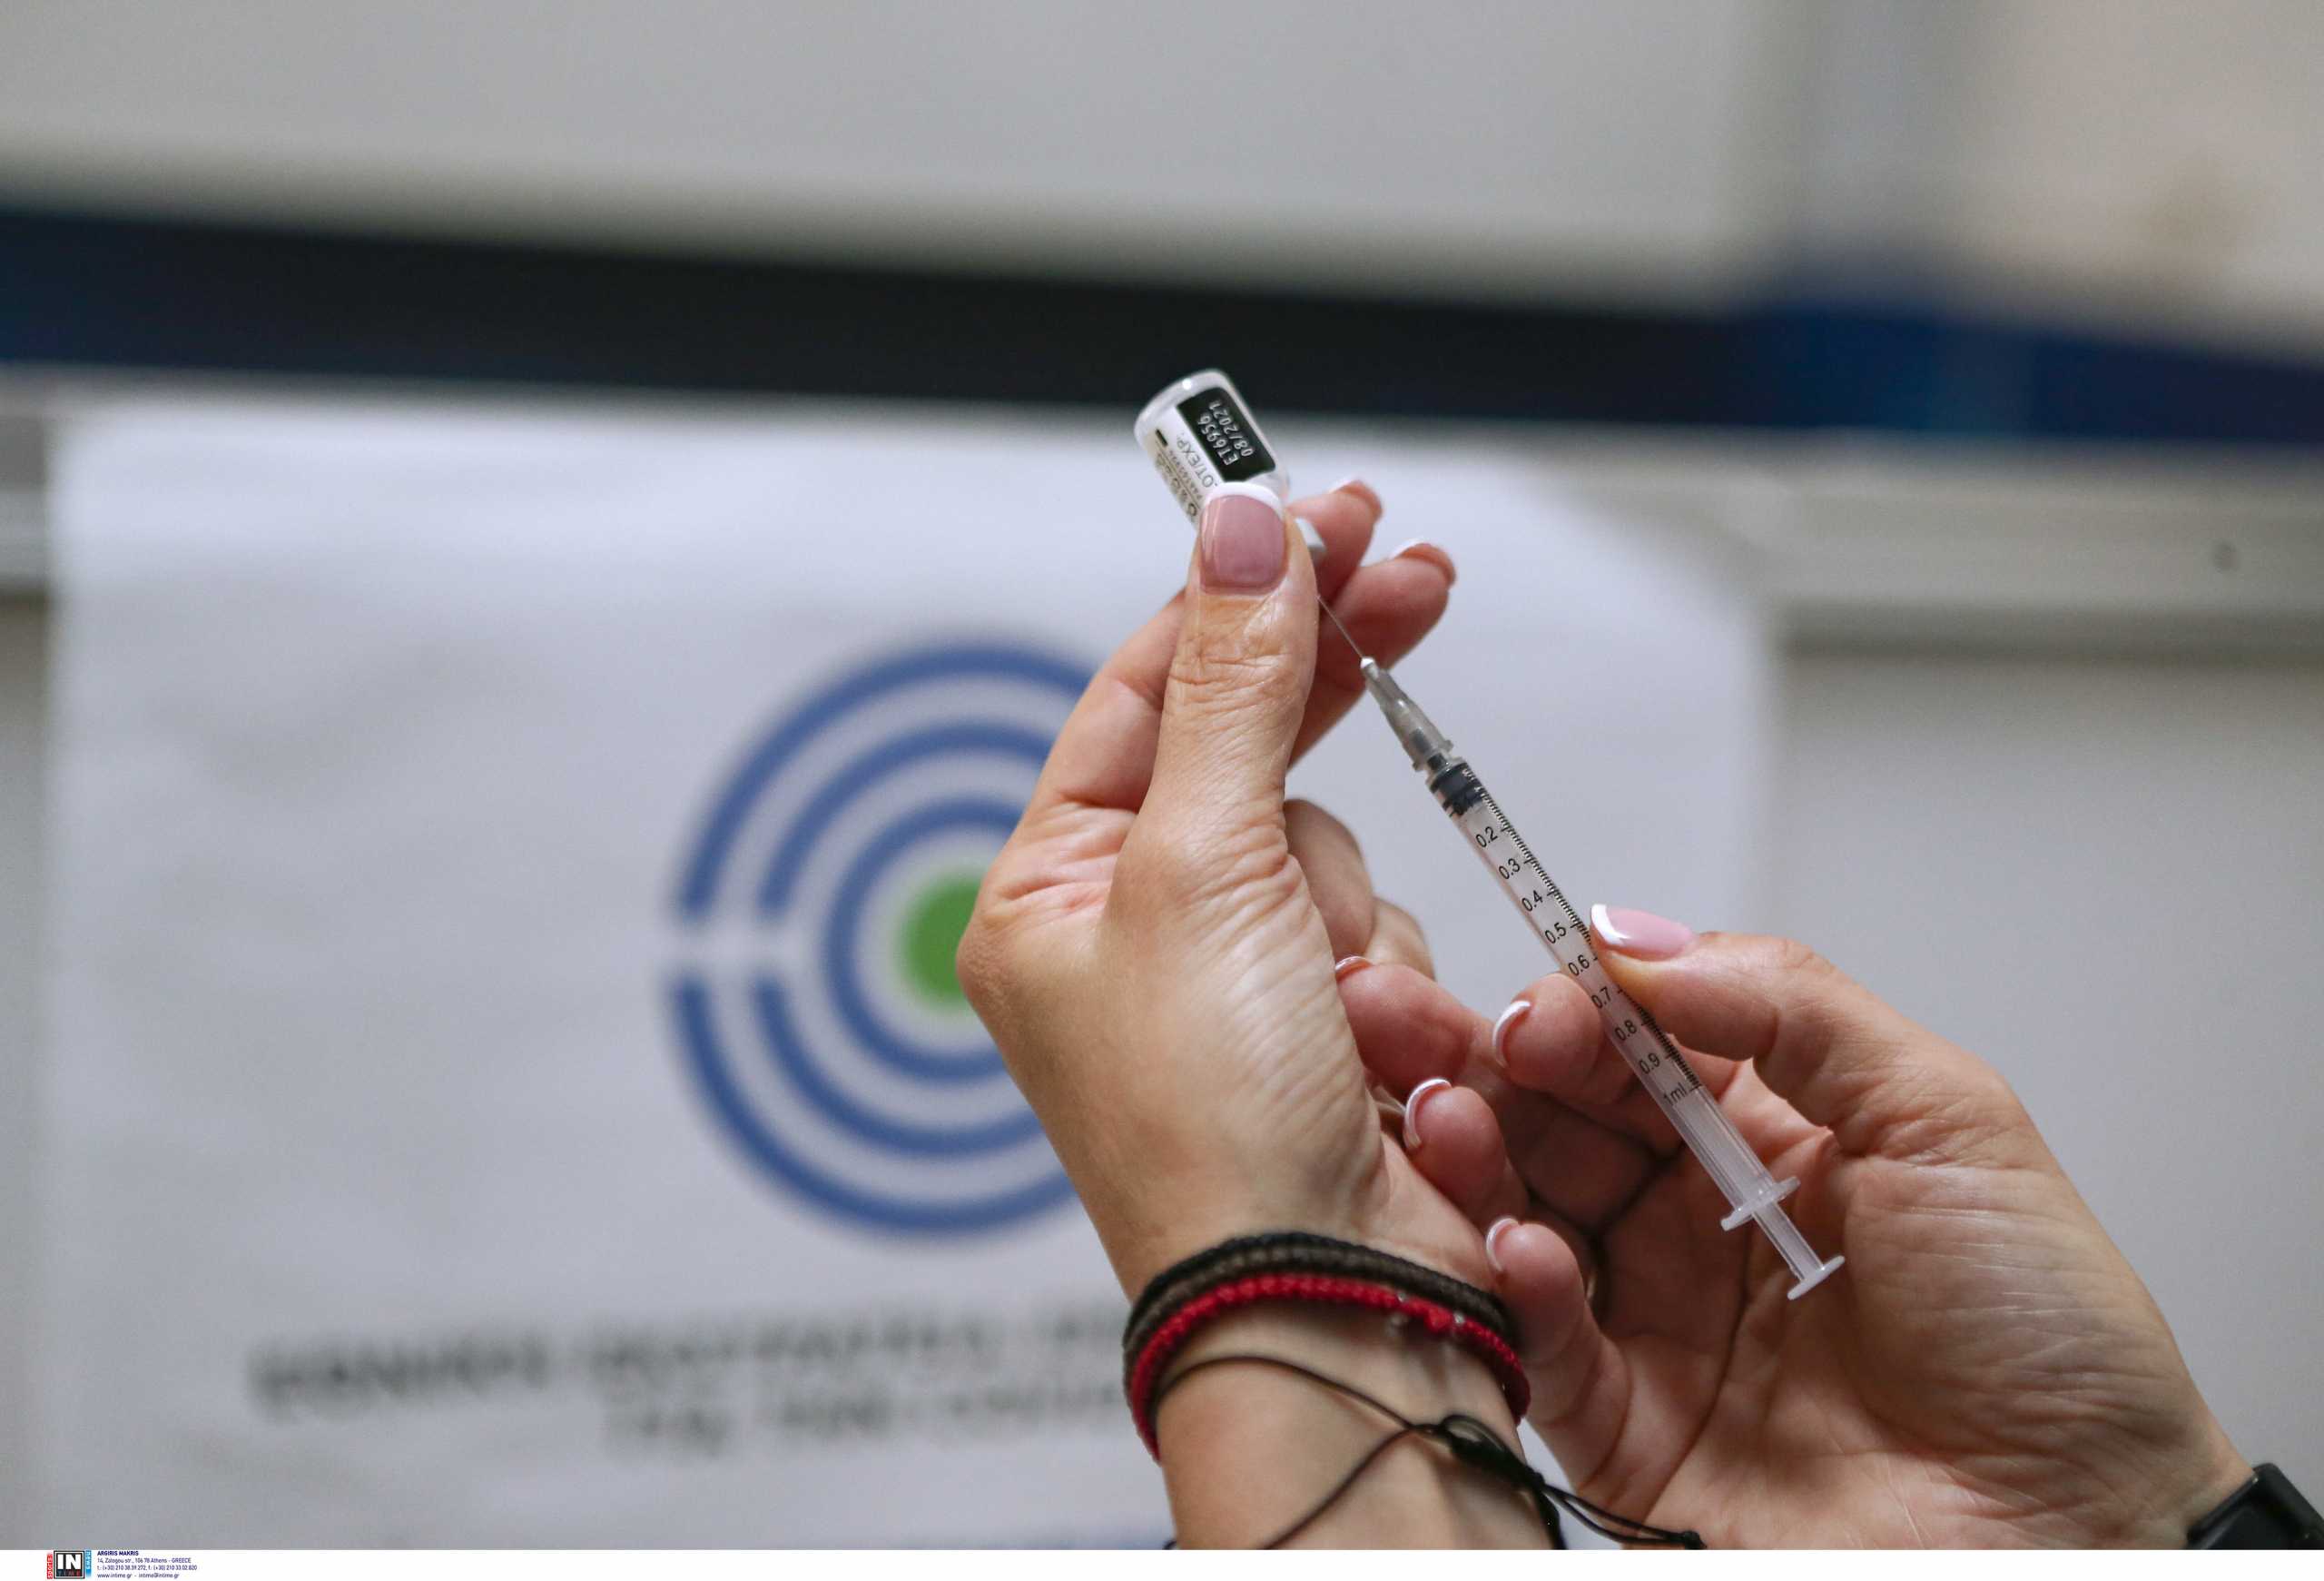 Κορονοϊός: Γιατροί πληρώνονται για να «εμβολιάσουν» αρνητές με νερό αλλά τους κάνουν κανονικό εμβόλιο